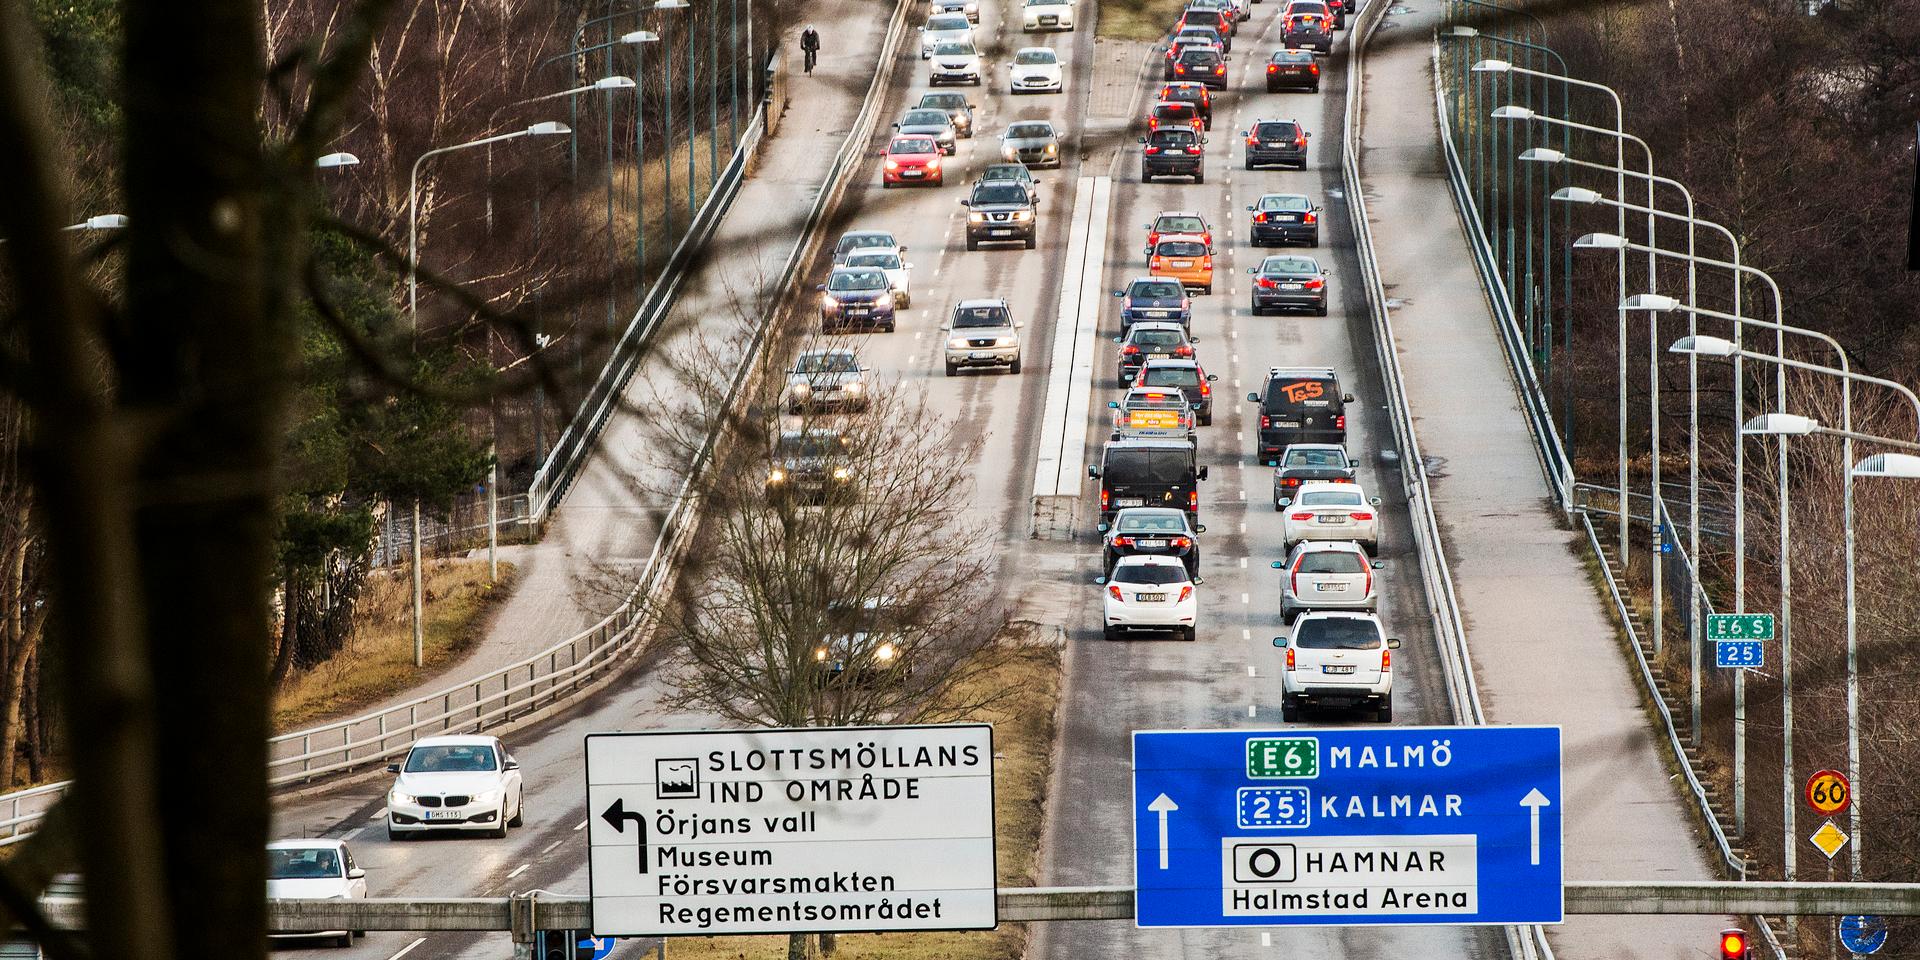 ”I dag har varje bil mer yta till förfogande än den boendeyta vi har per person. Omkring 30 procent av ytan i svenska städer upptas av bilar som körs, eller står parkerade.”